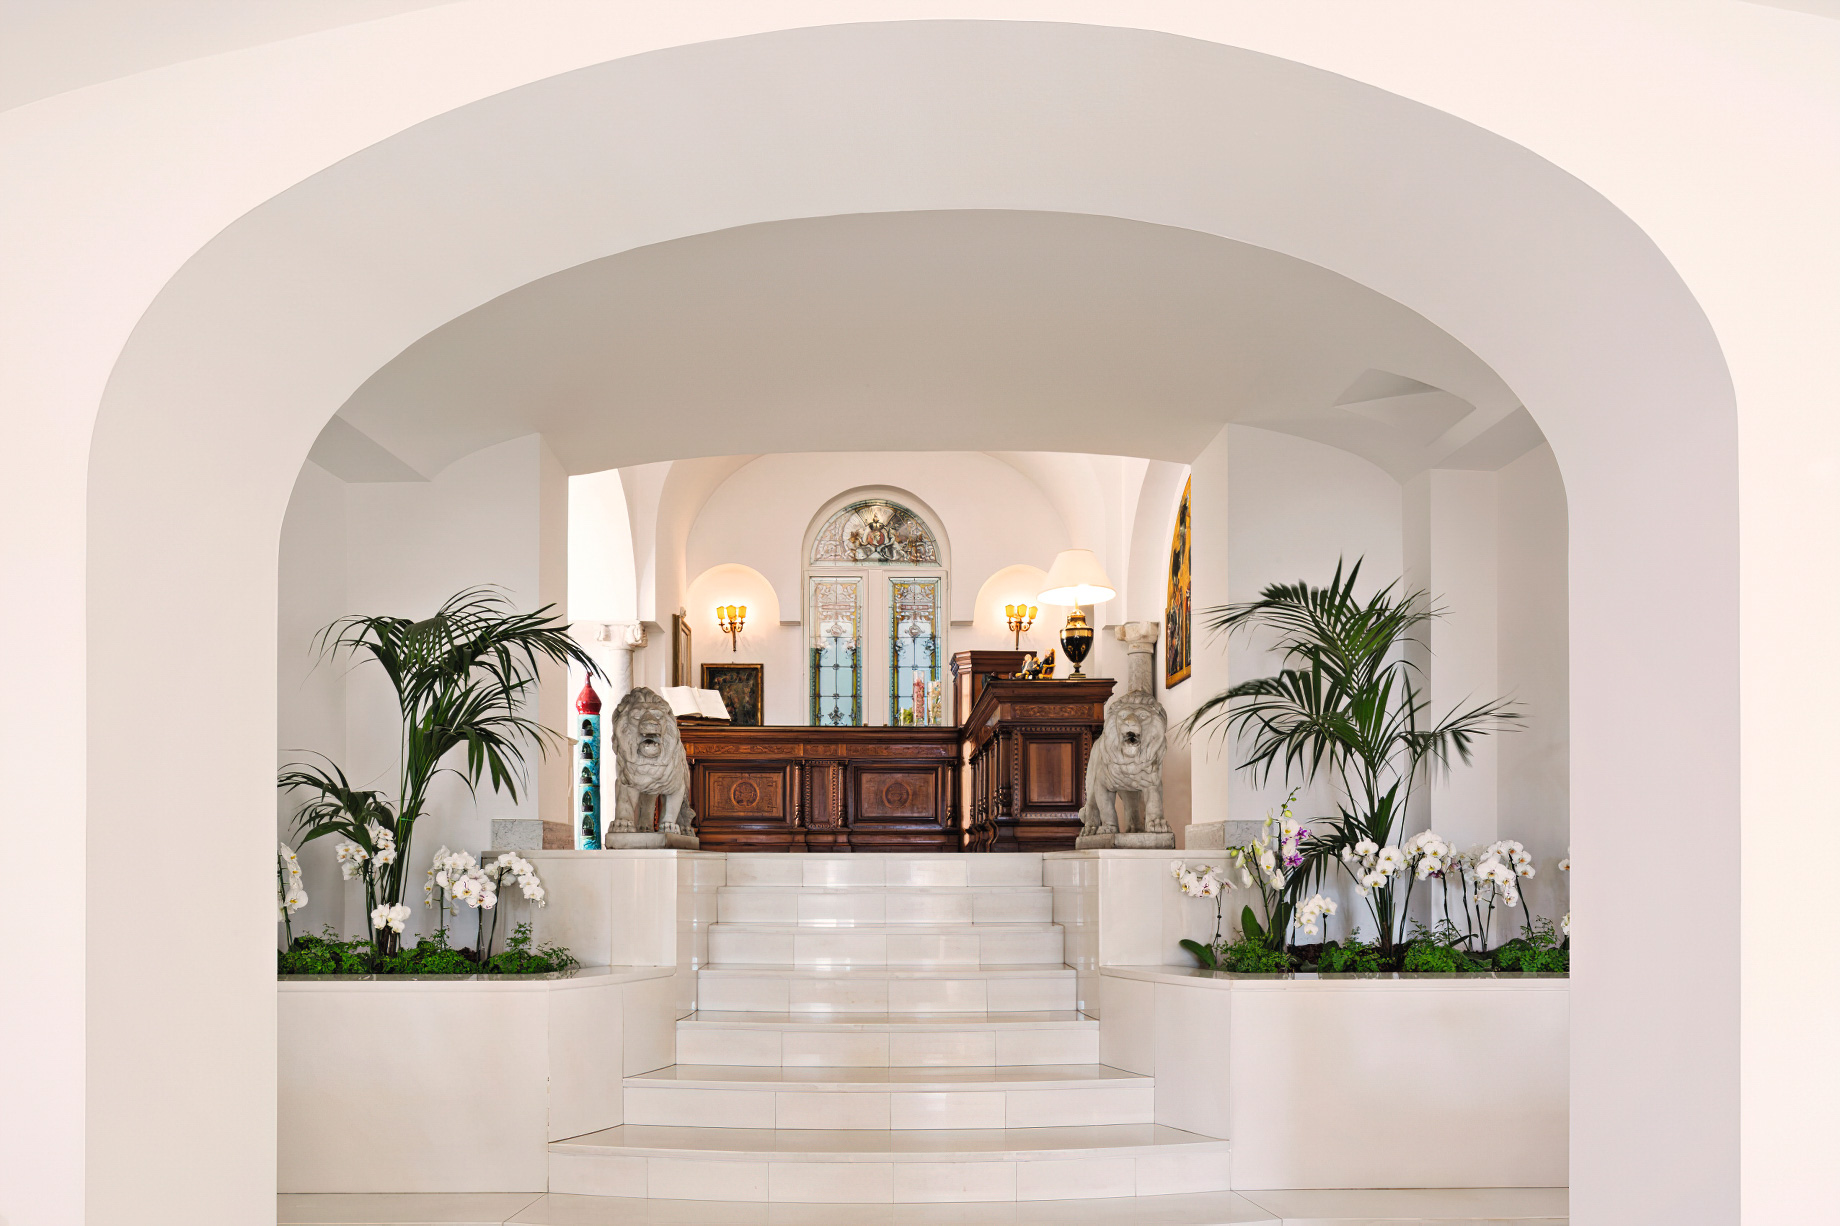 Palazzo Avino Hotel – Amalfi Coast, Ravello, Italy – Reception